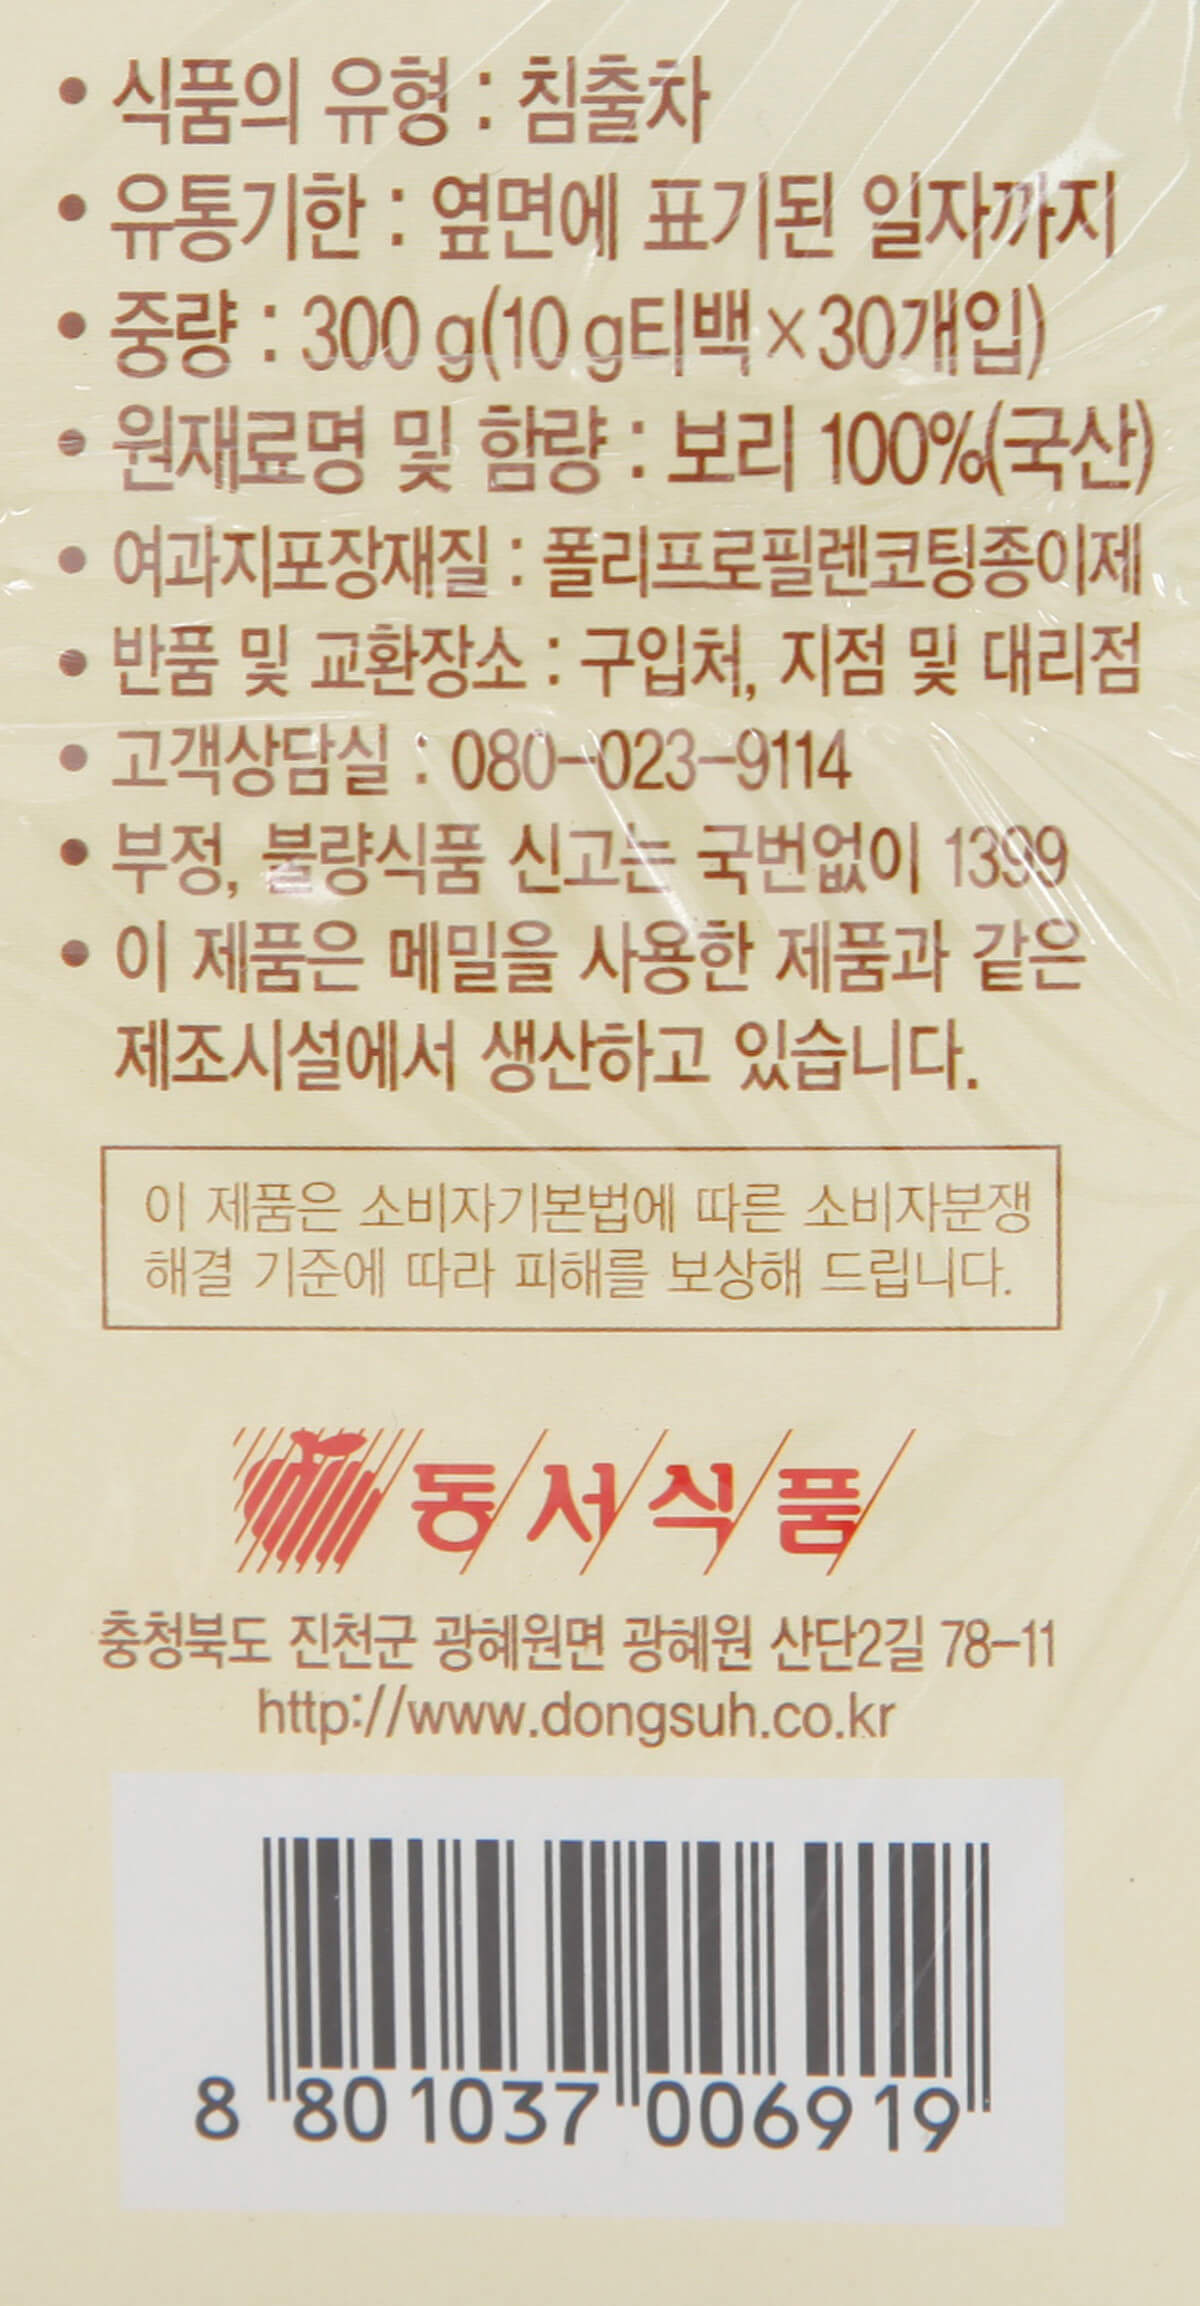 韓國食品-[동서] 순보리차 10g*30입